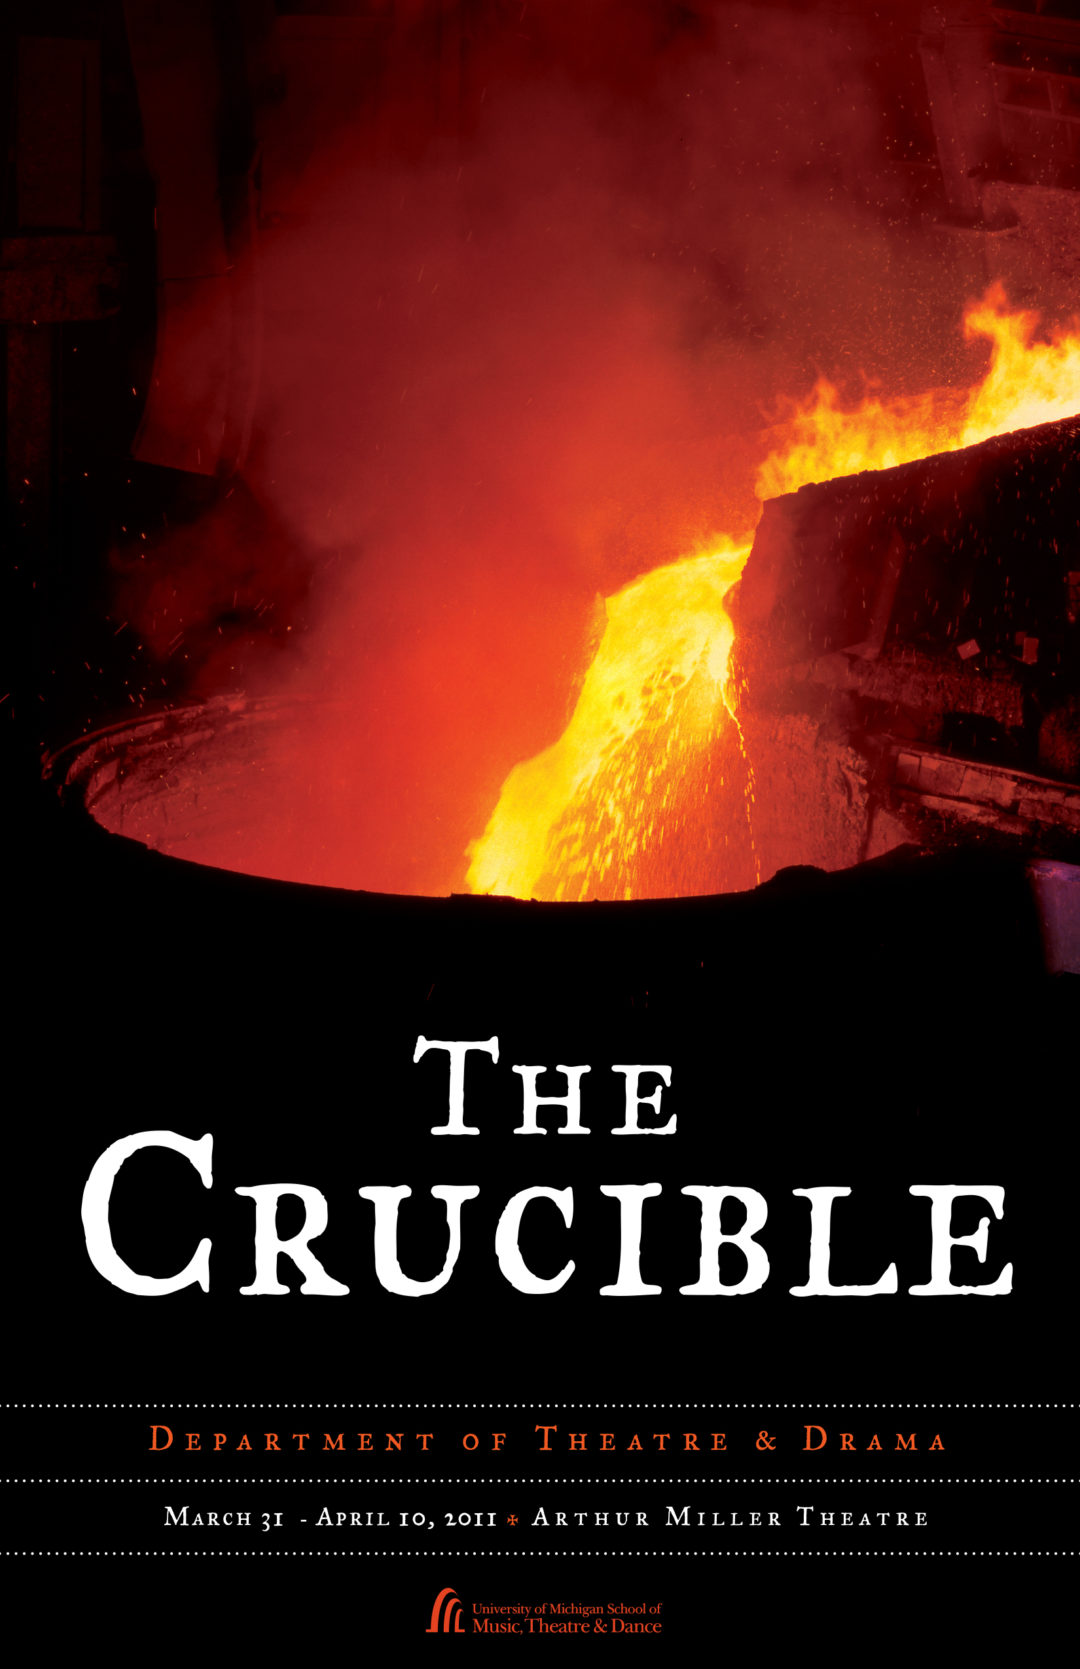 Crucible' provides a look at human nature